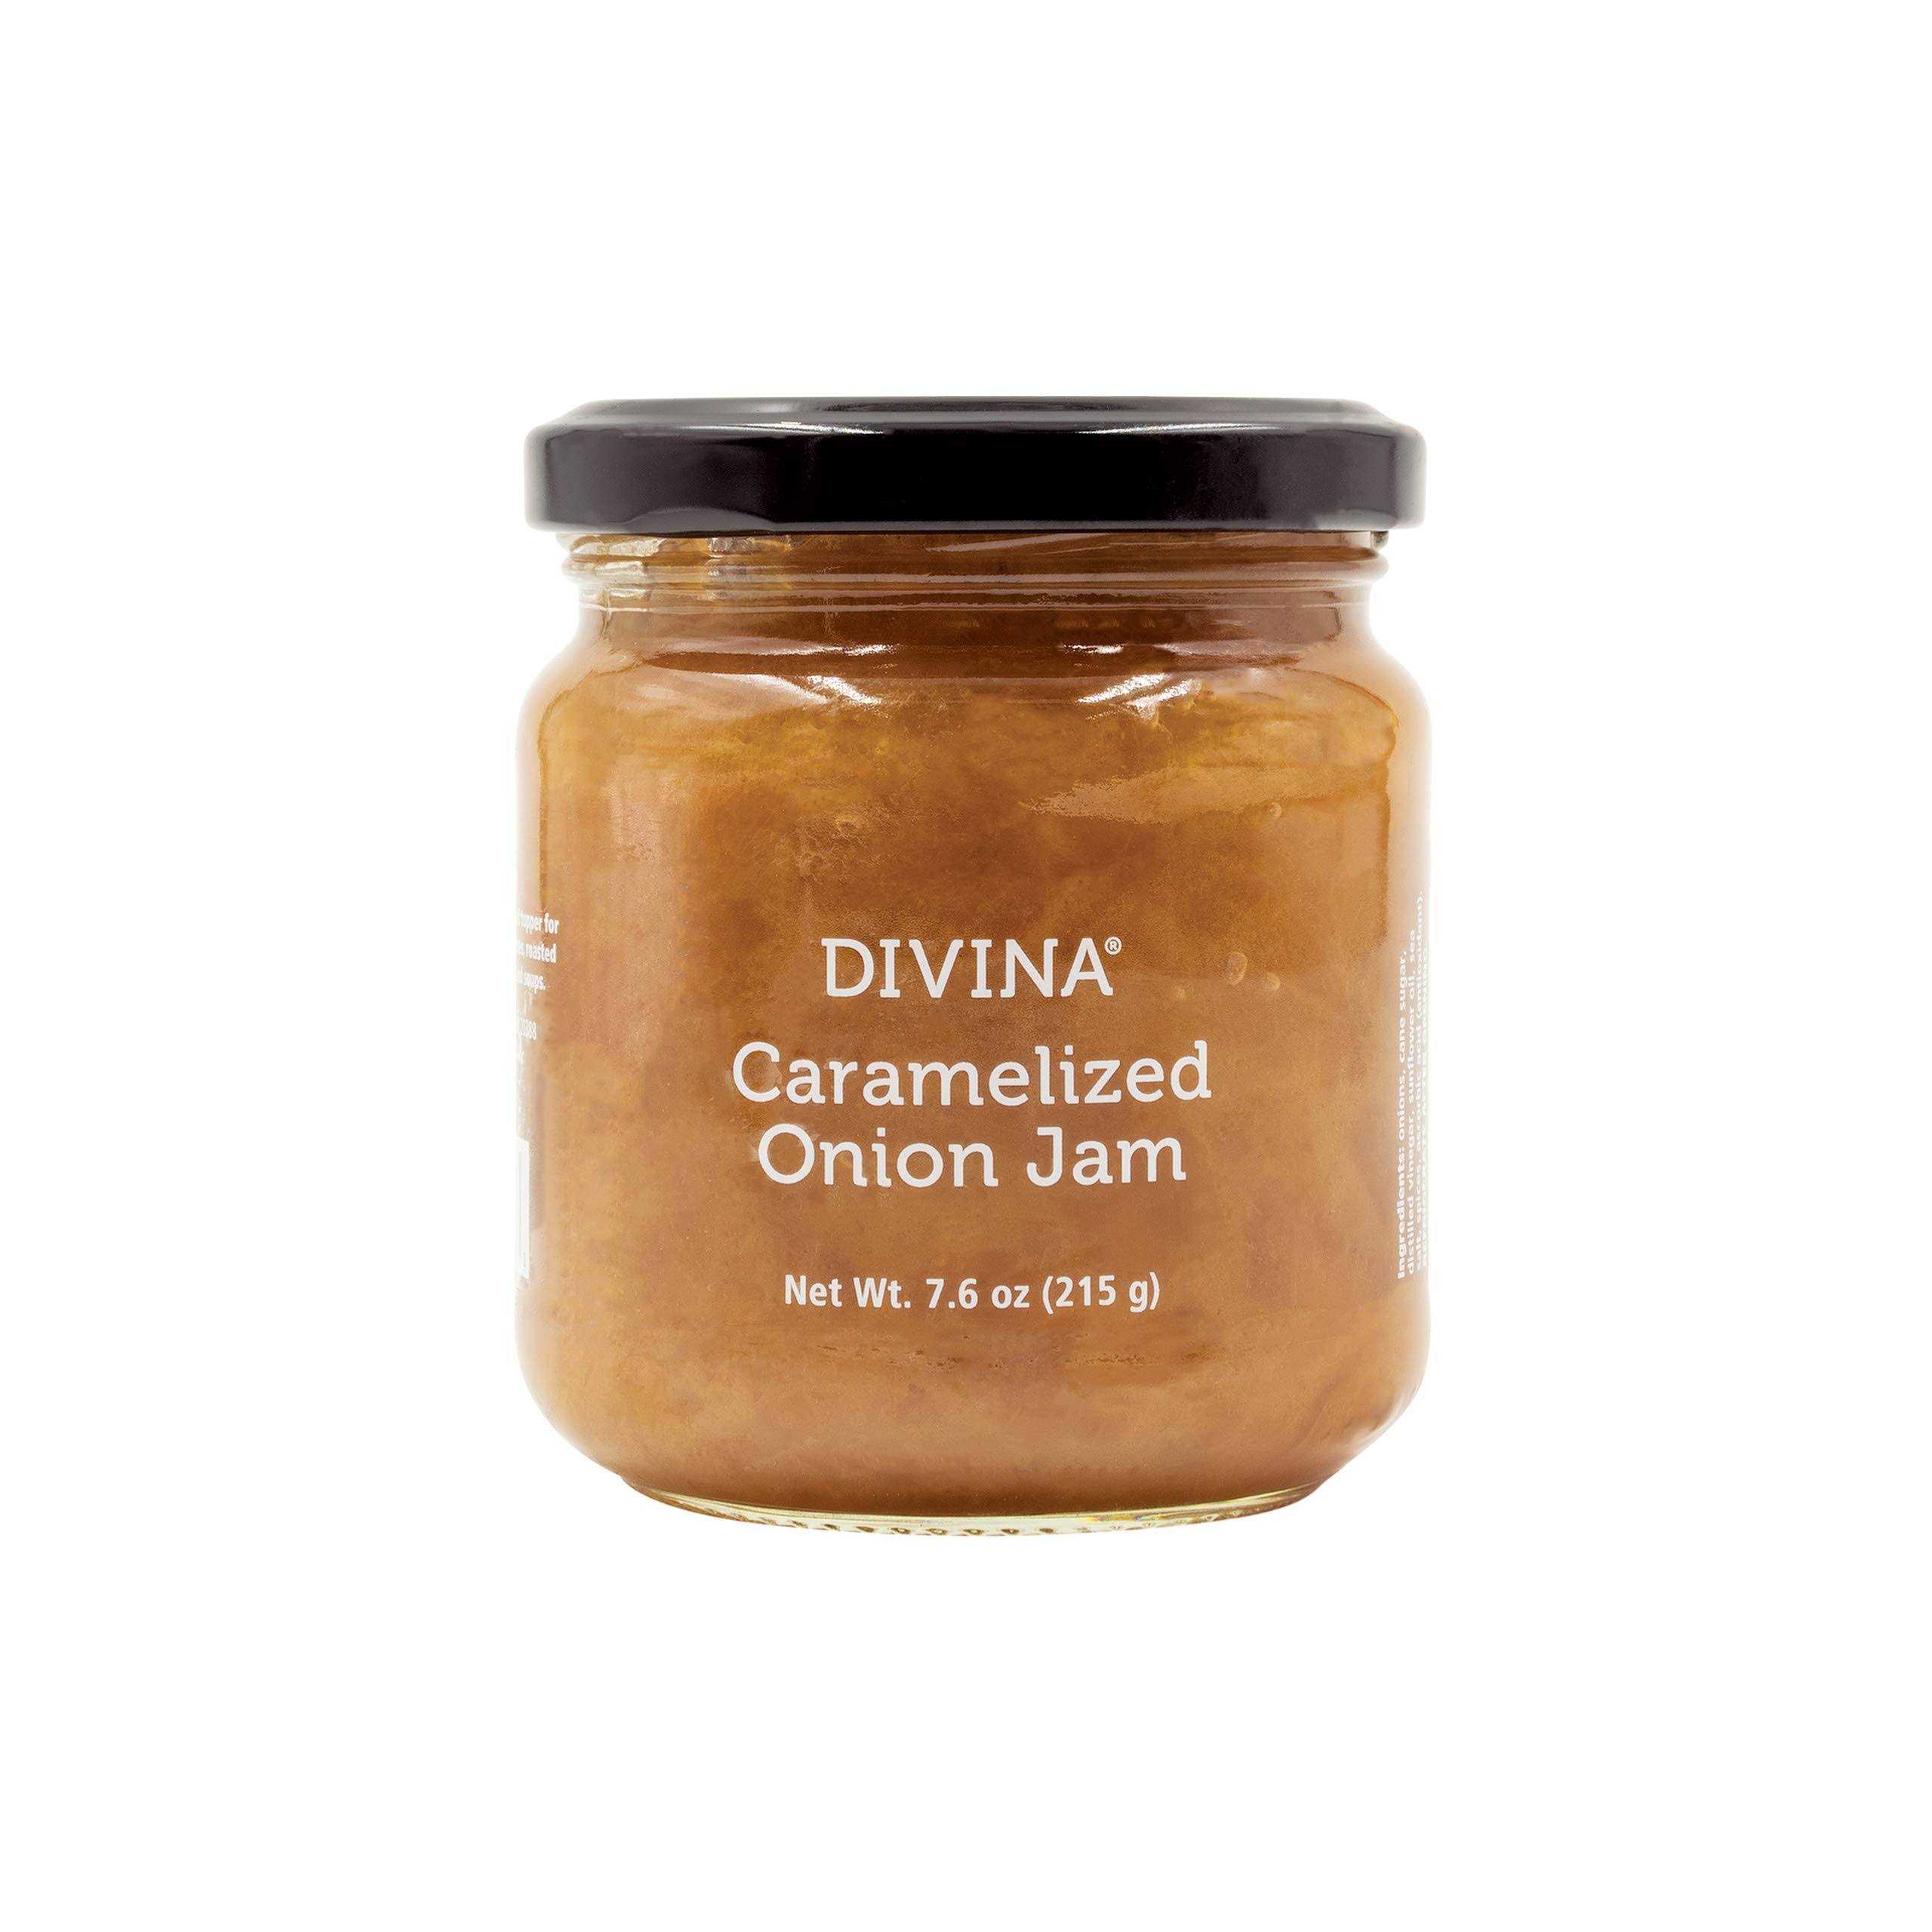 Divina Caramelized Onion Jam 7.6 oz